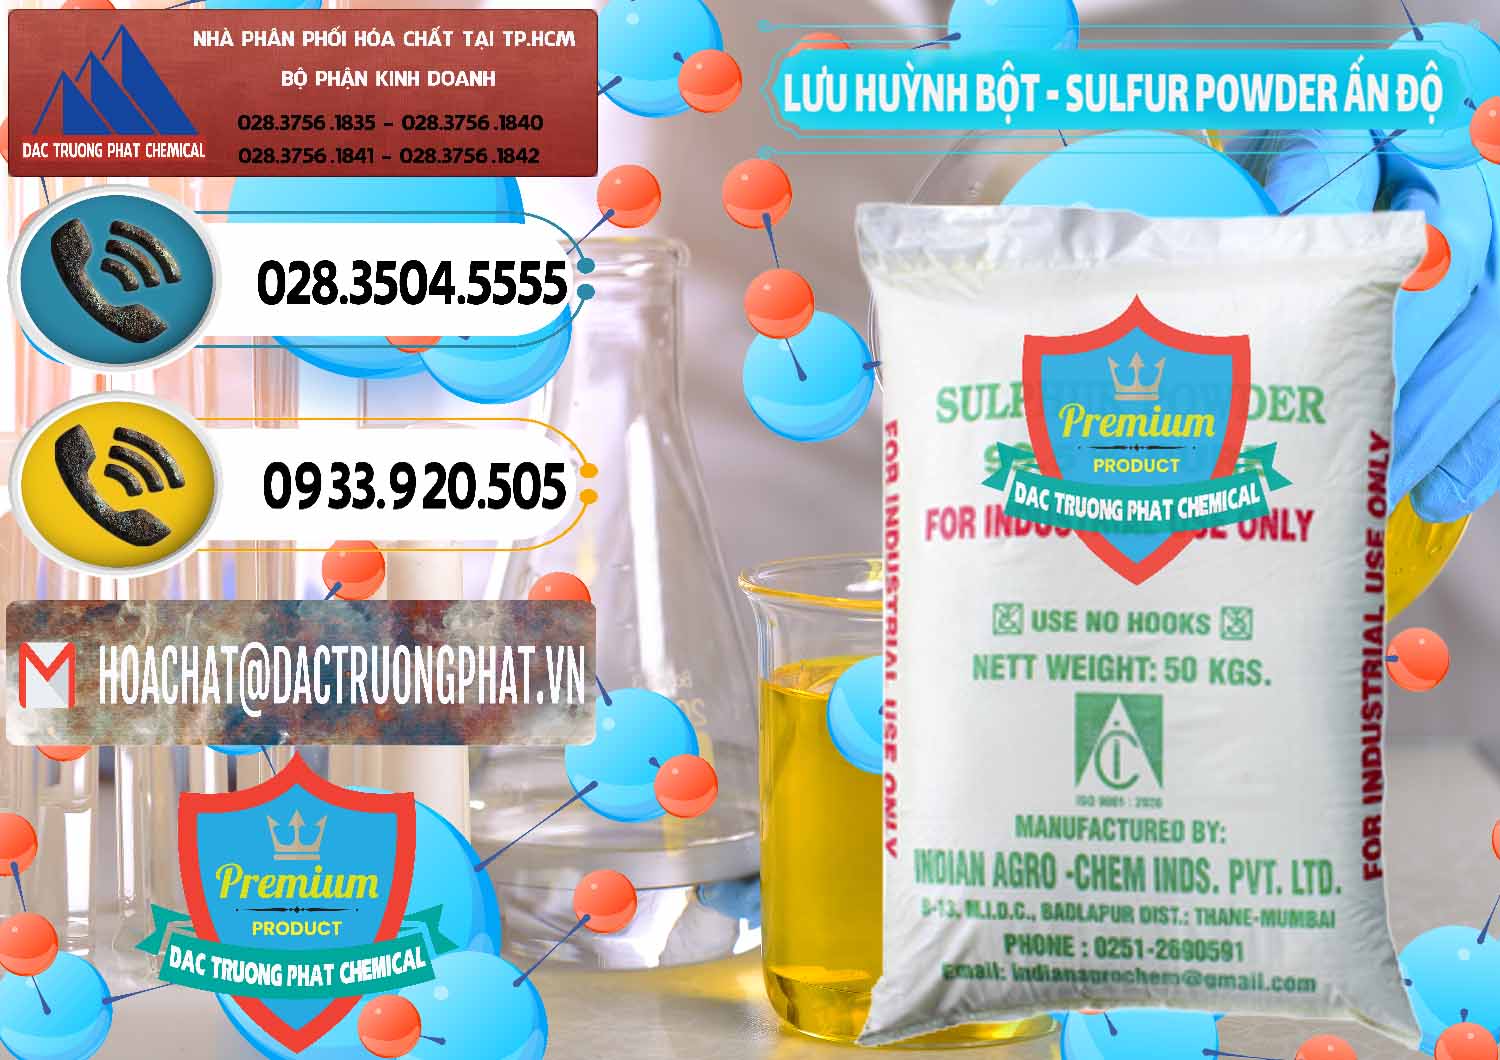 Cty chuyên cung cấp _ bán Lưu huỳnh Bột - Sulfur Powder Ấn Độ India - 0347 - Cty phân phối - bán hóa chất tại TP.HCM - hoachatdetnhuom.vn